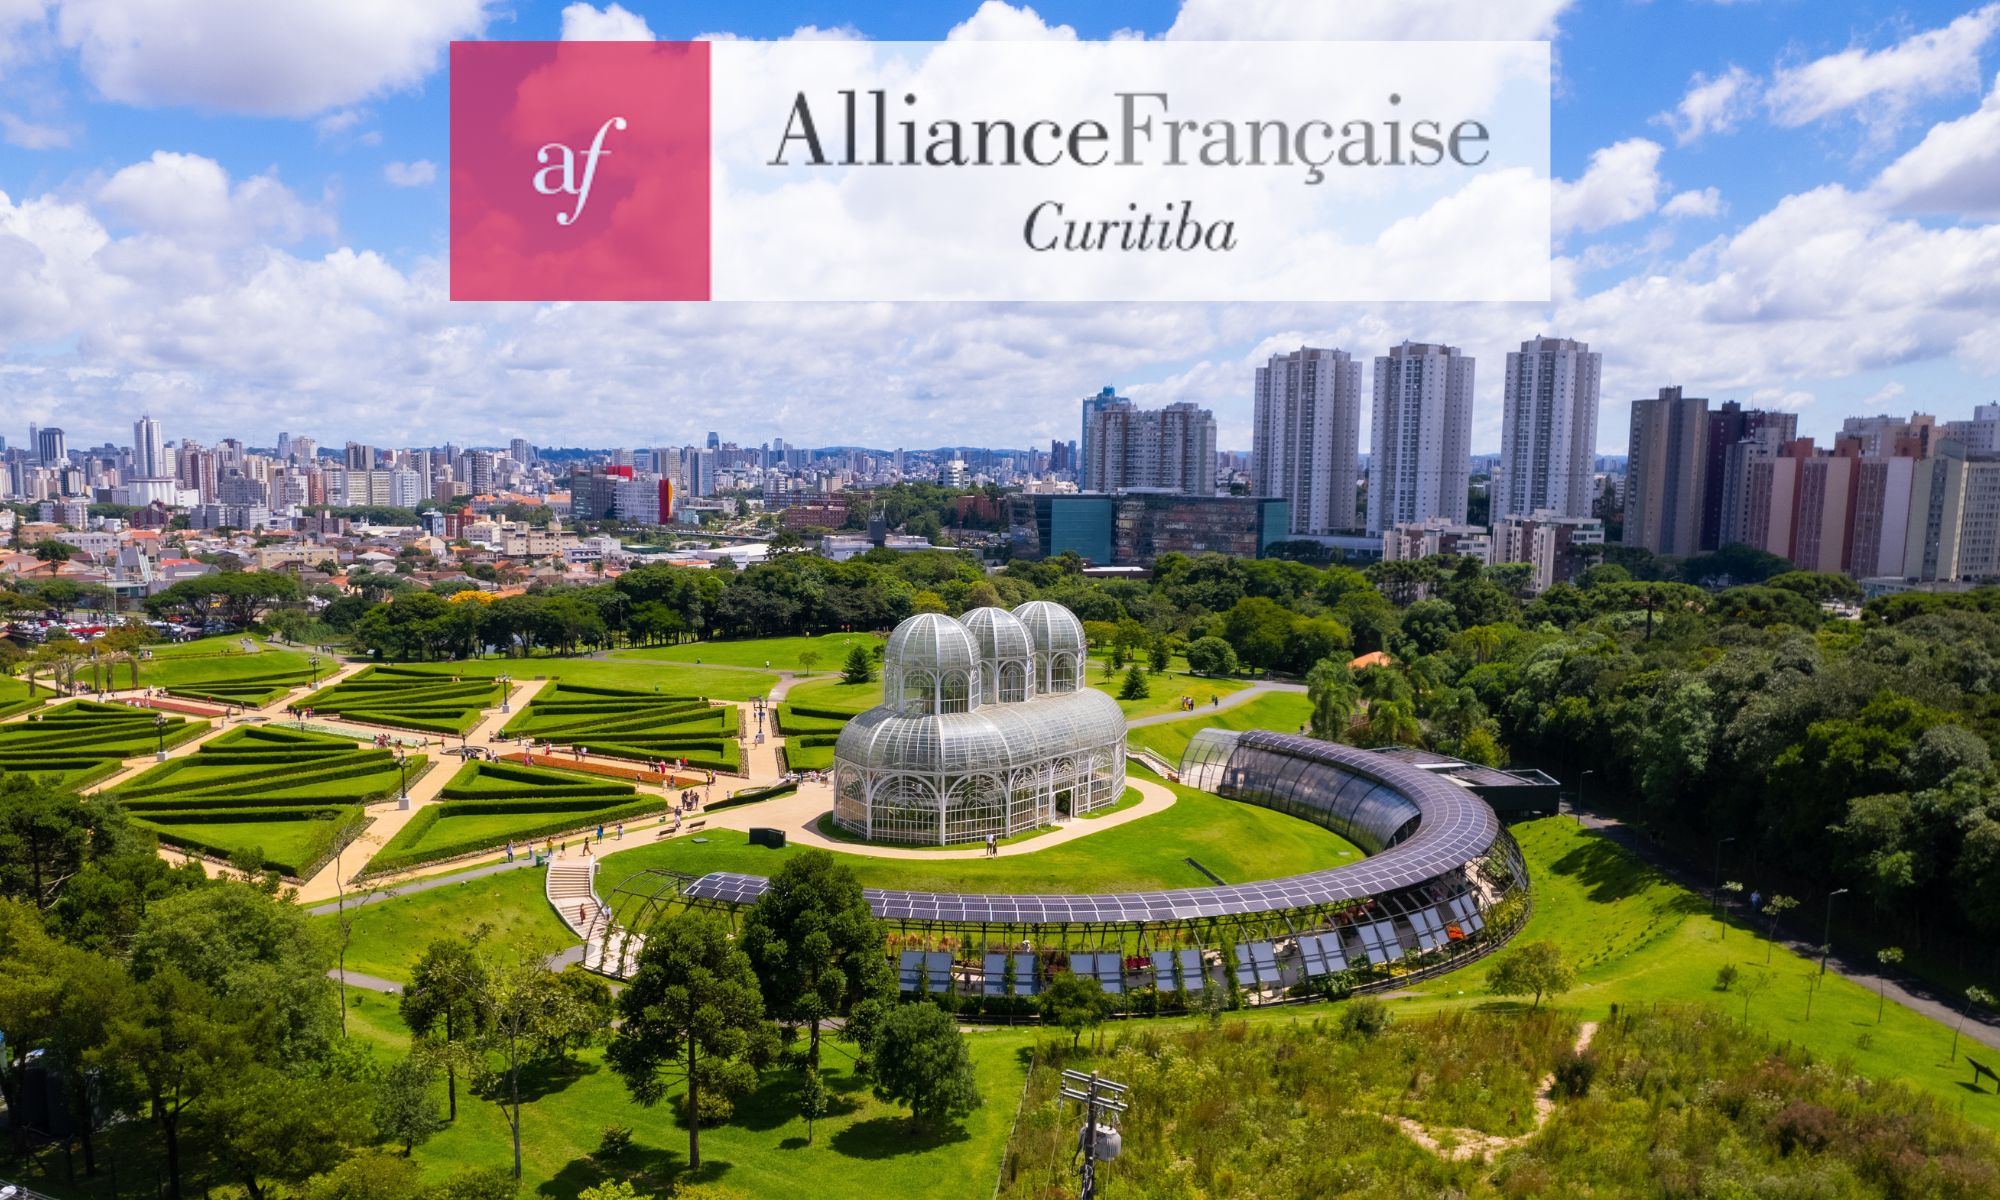 Une atelier virtuel innovant à l’Alliance française de Curitiba au Brésil